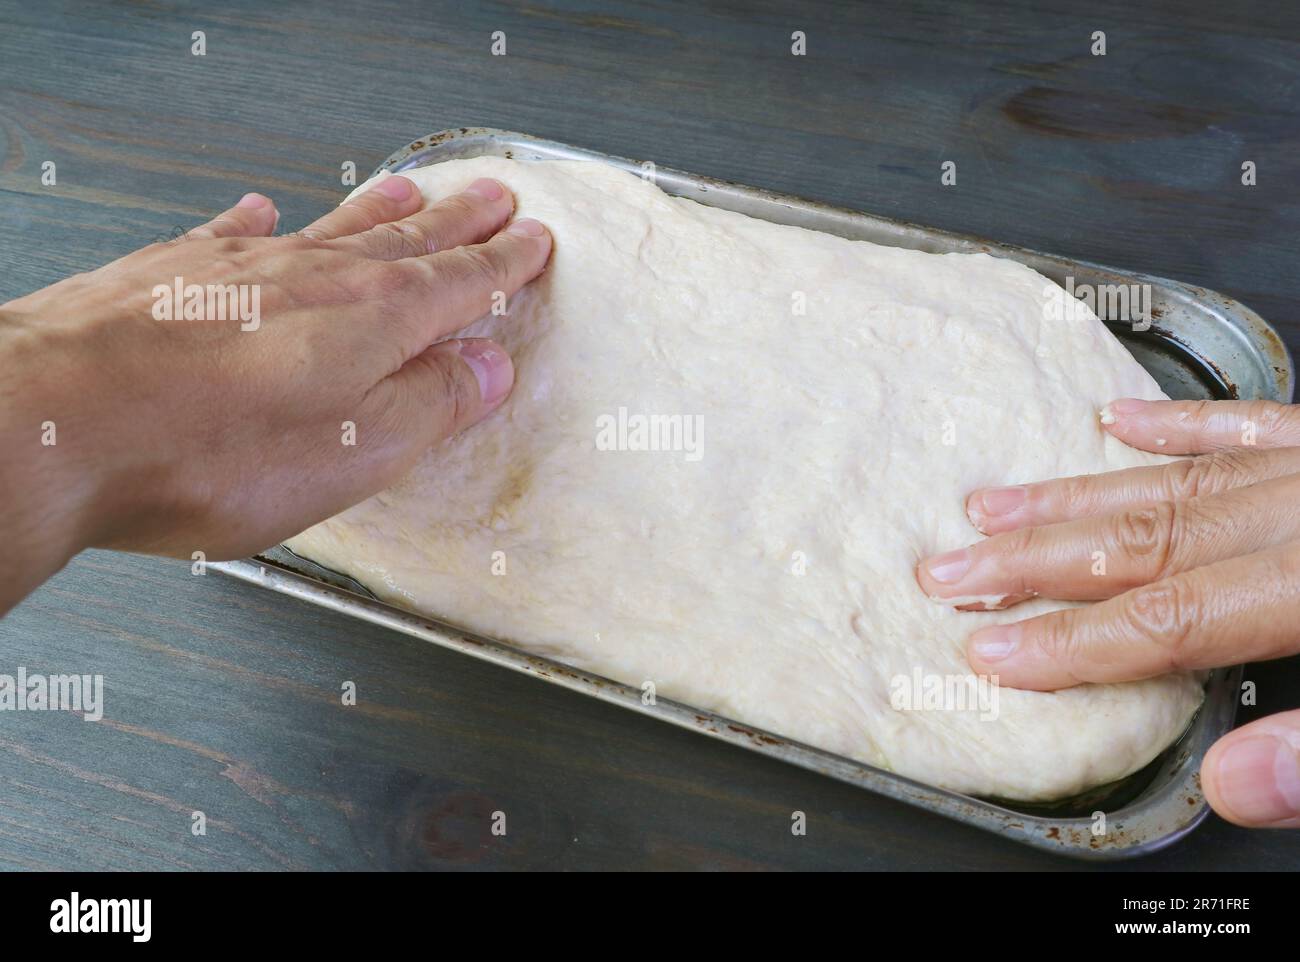 Die Hände strecken den Teig in einem Topf, um Pizza zu backen Stockfoto